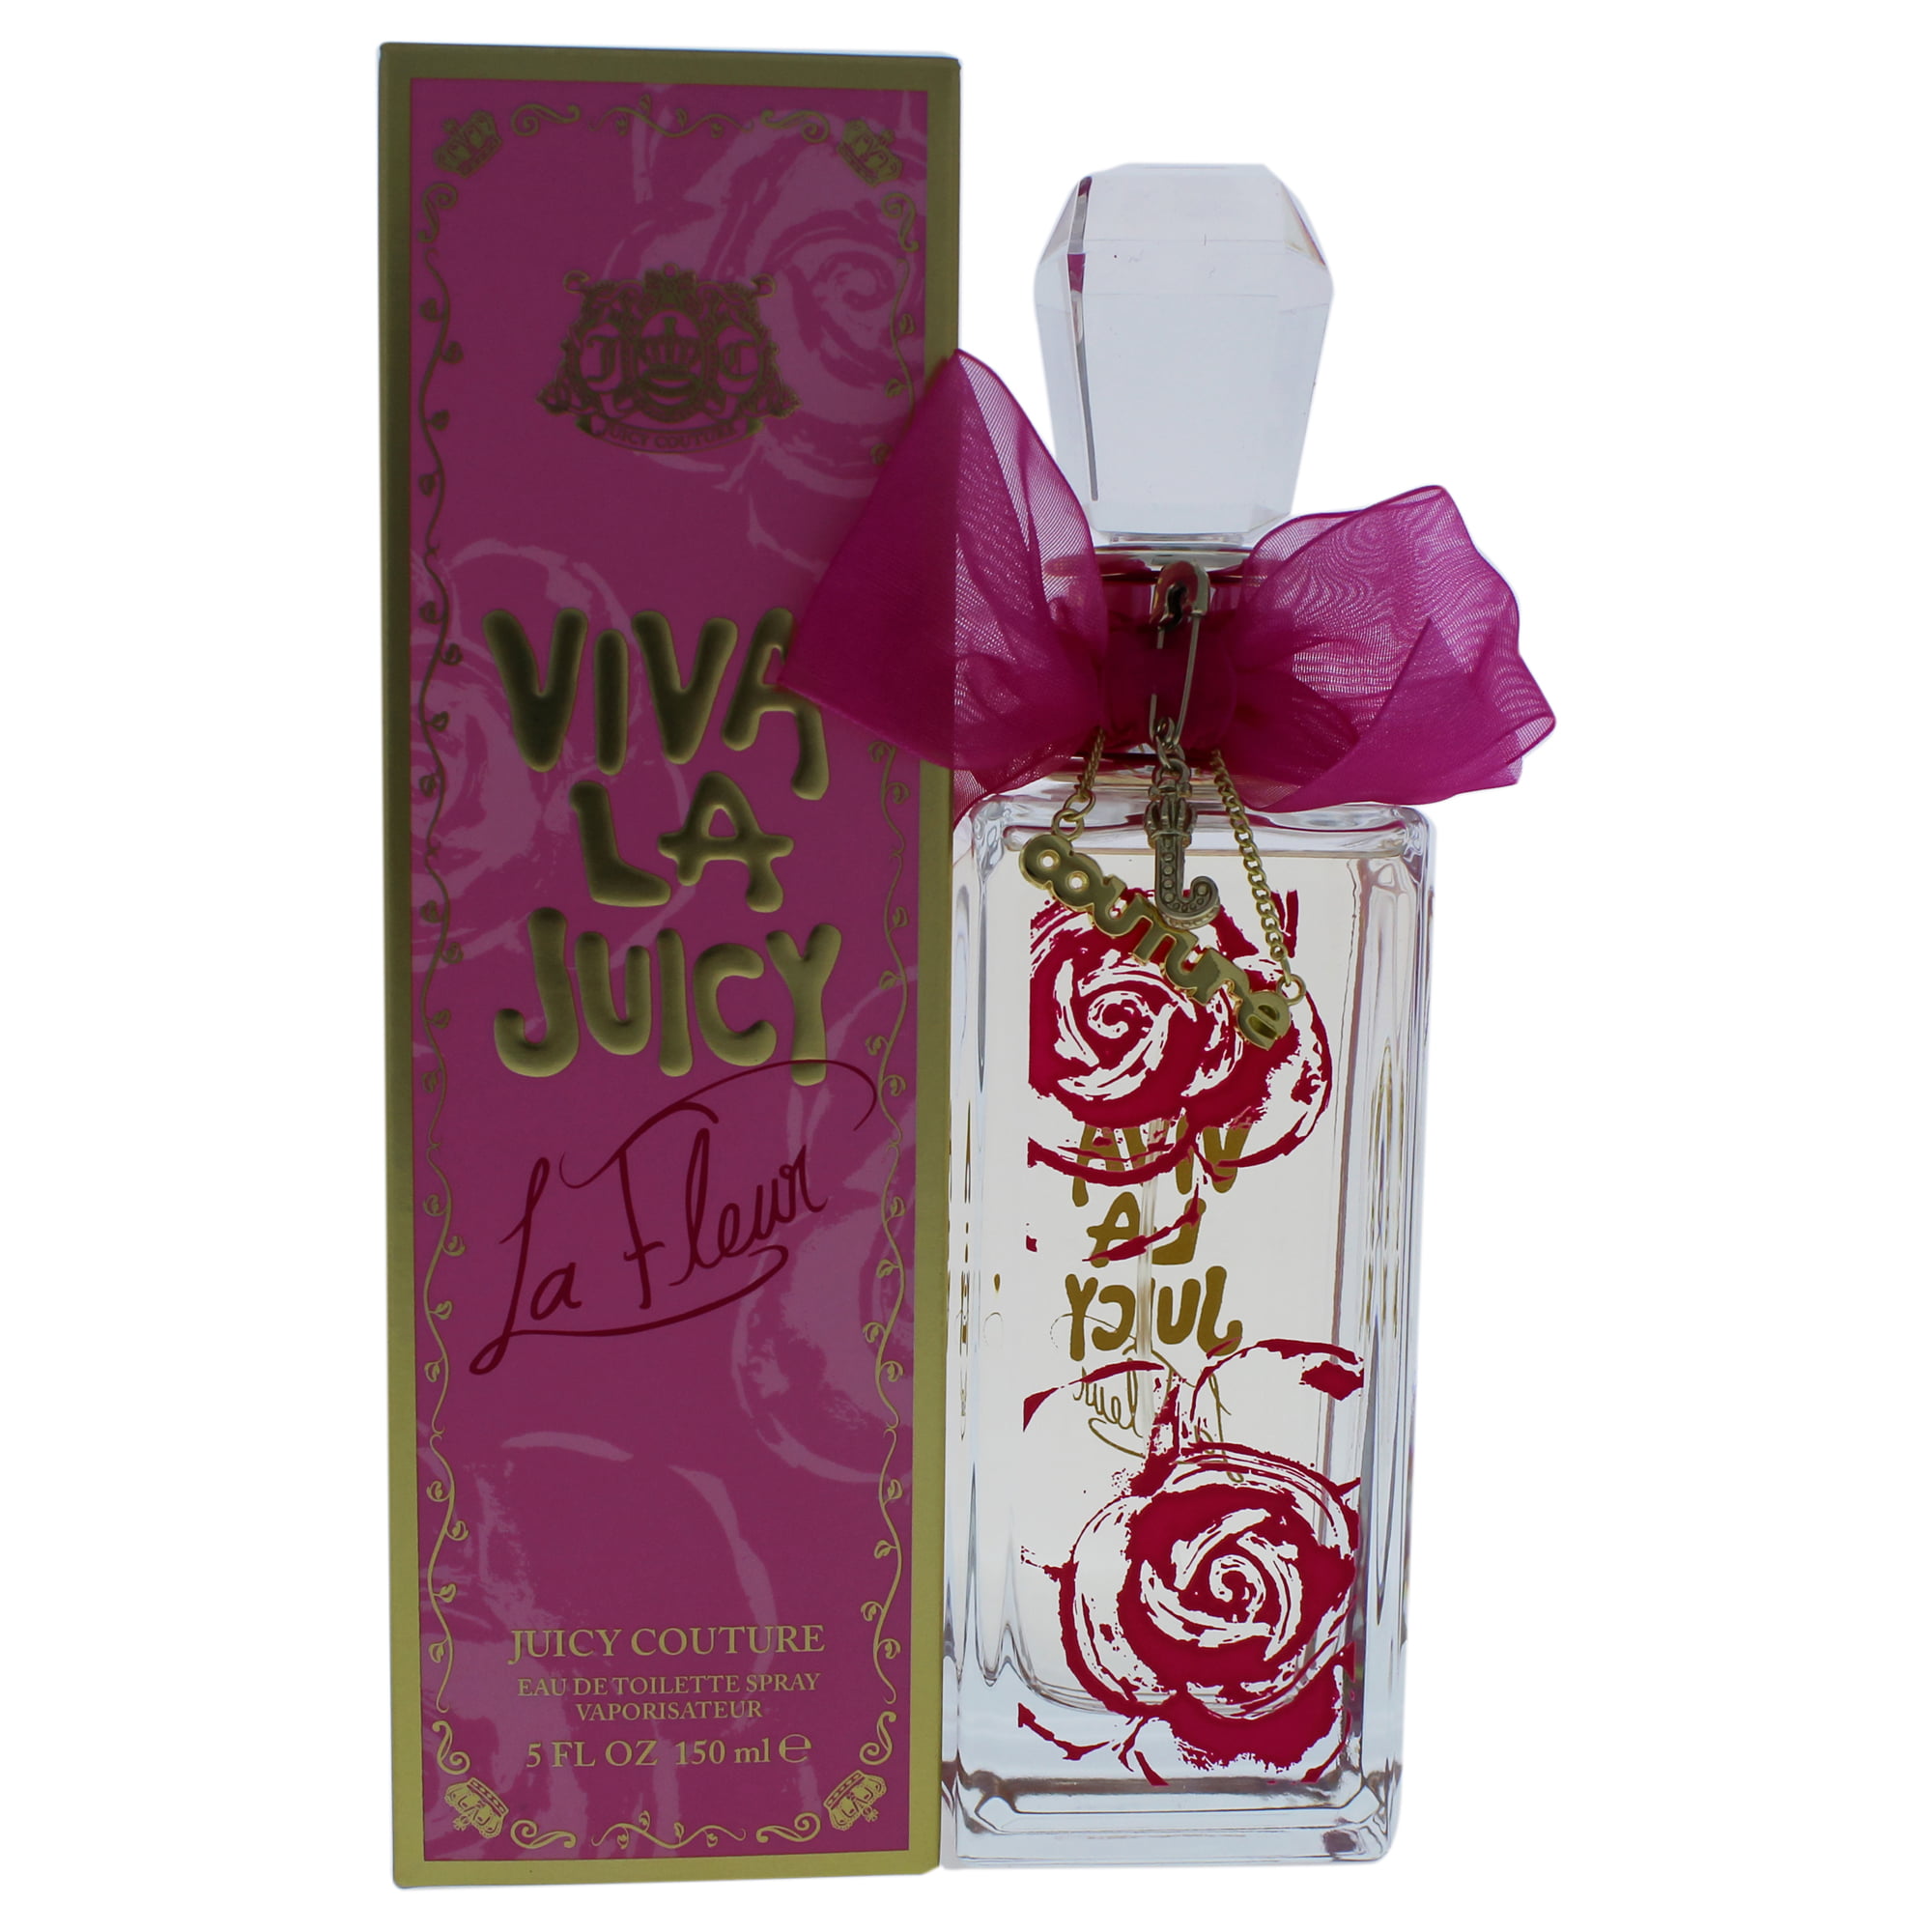 Viva La Juicy La Fleur by Juicy Couture for Women - 5 oz EDT Spray ...